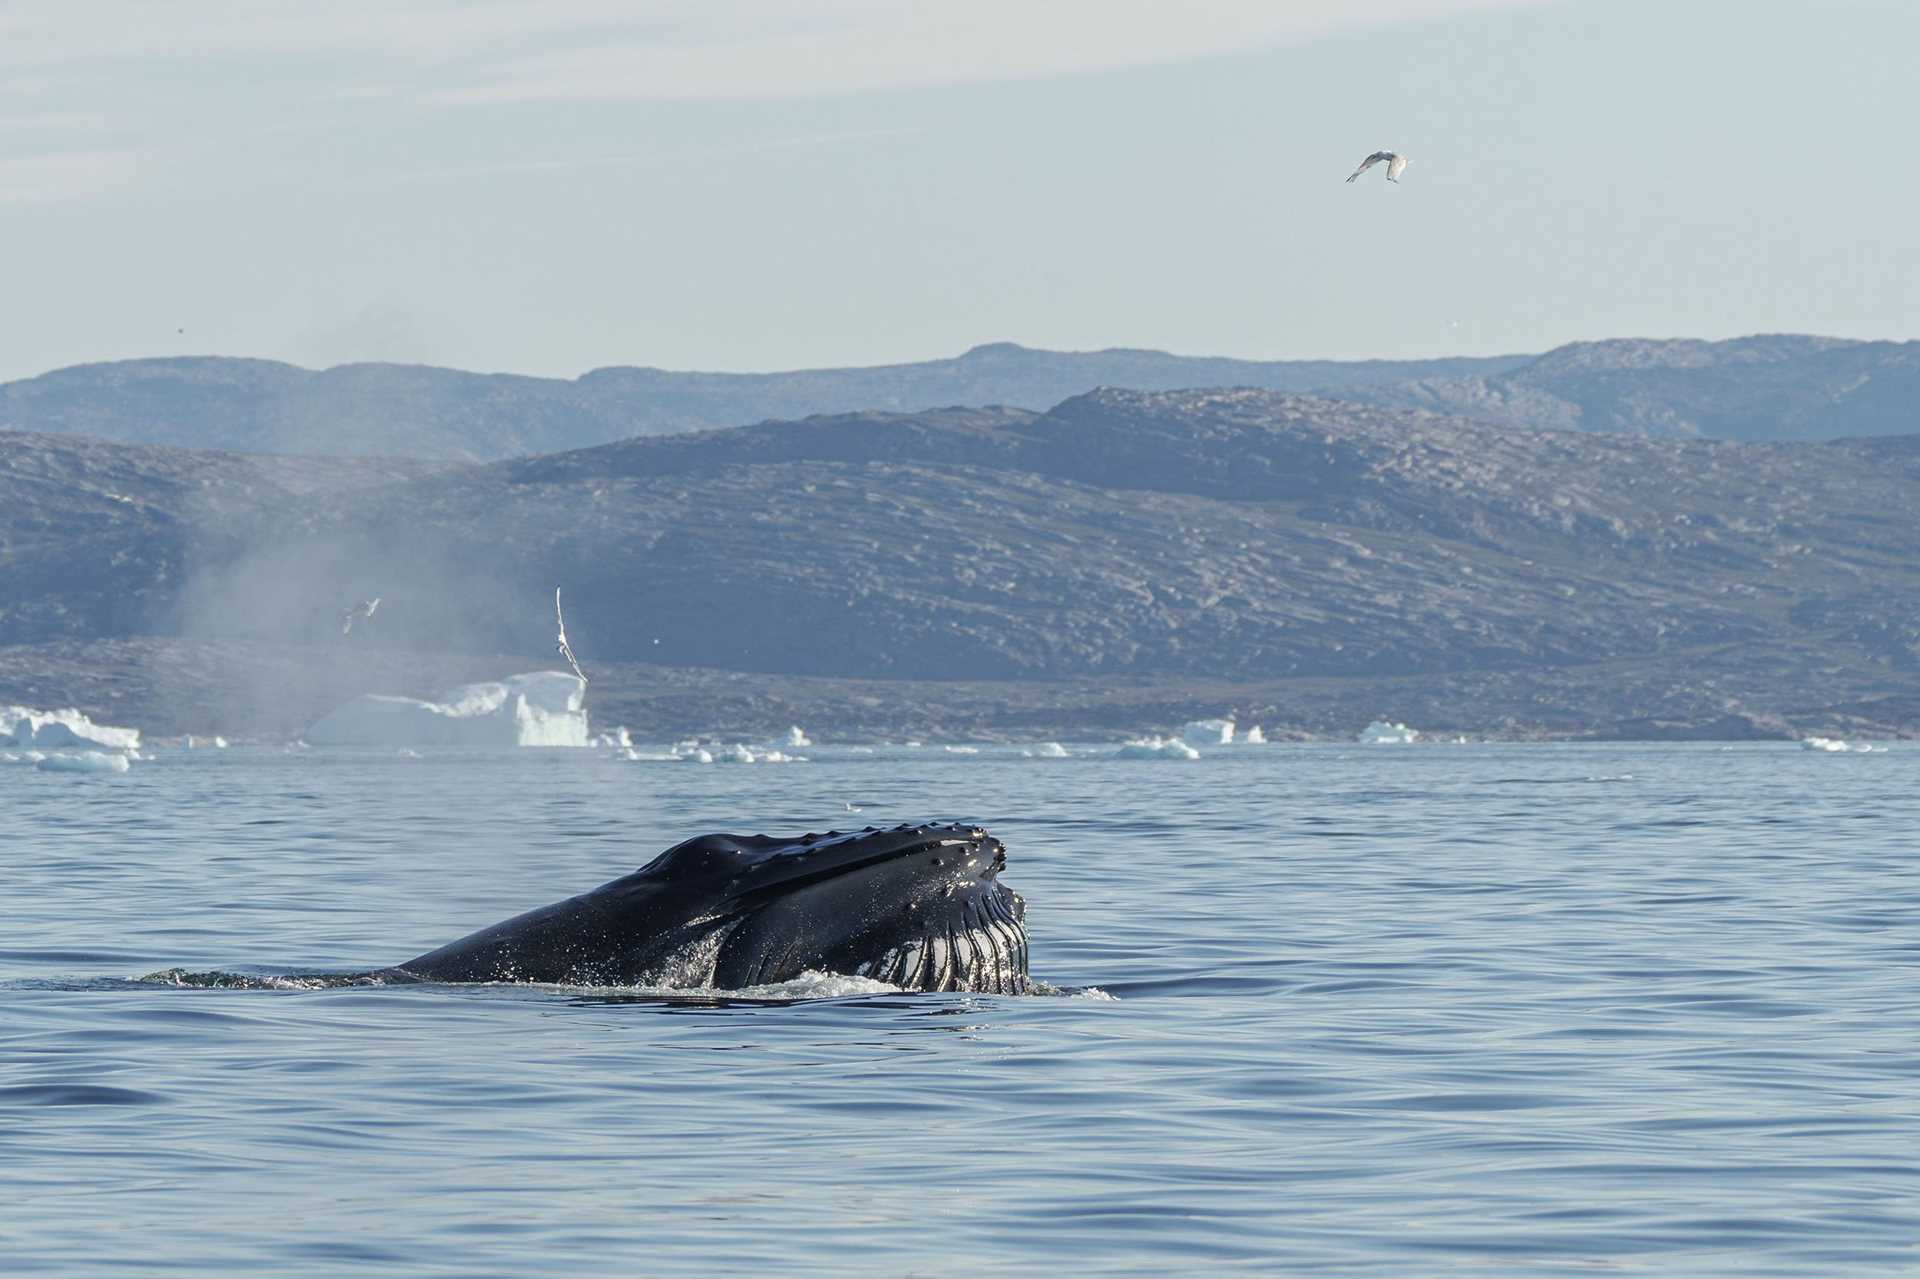 whale lunge feeding